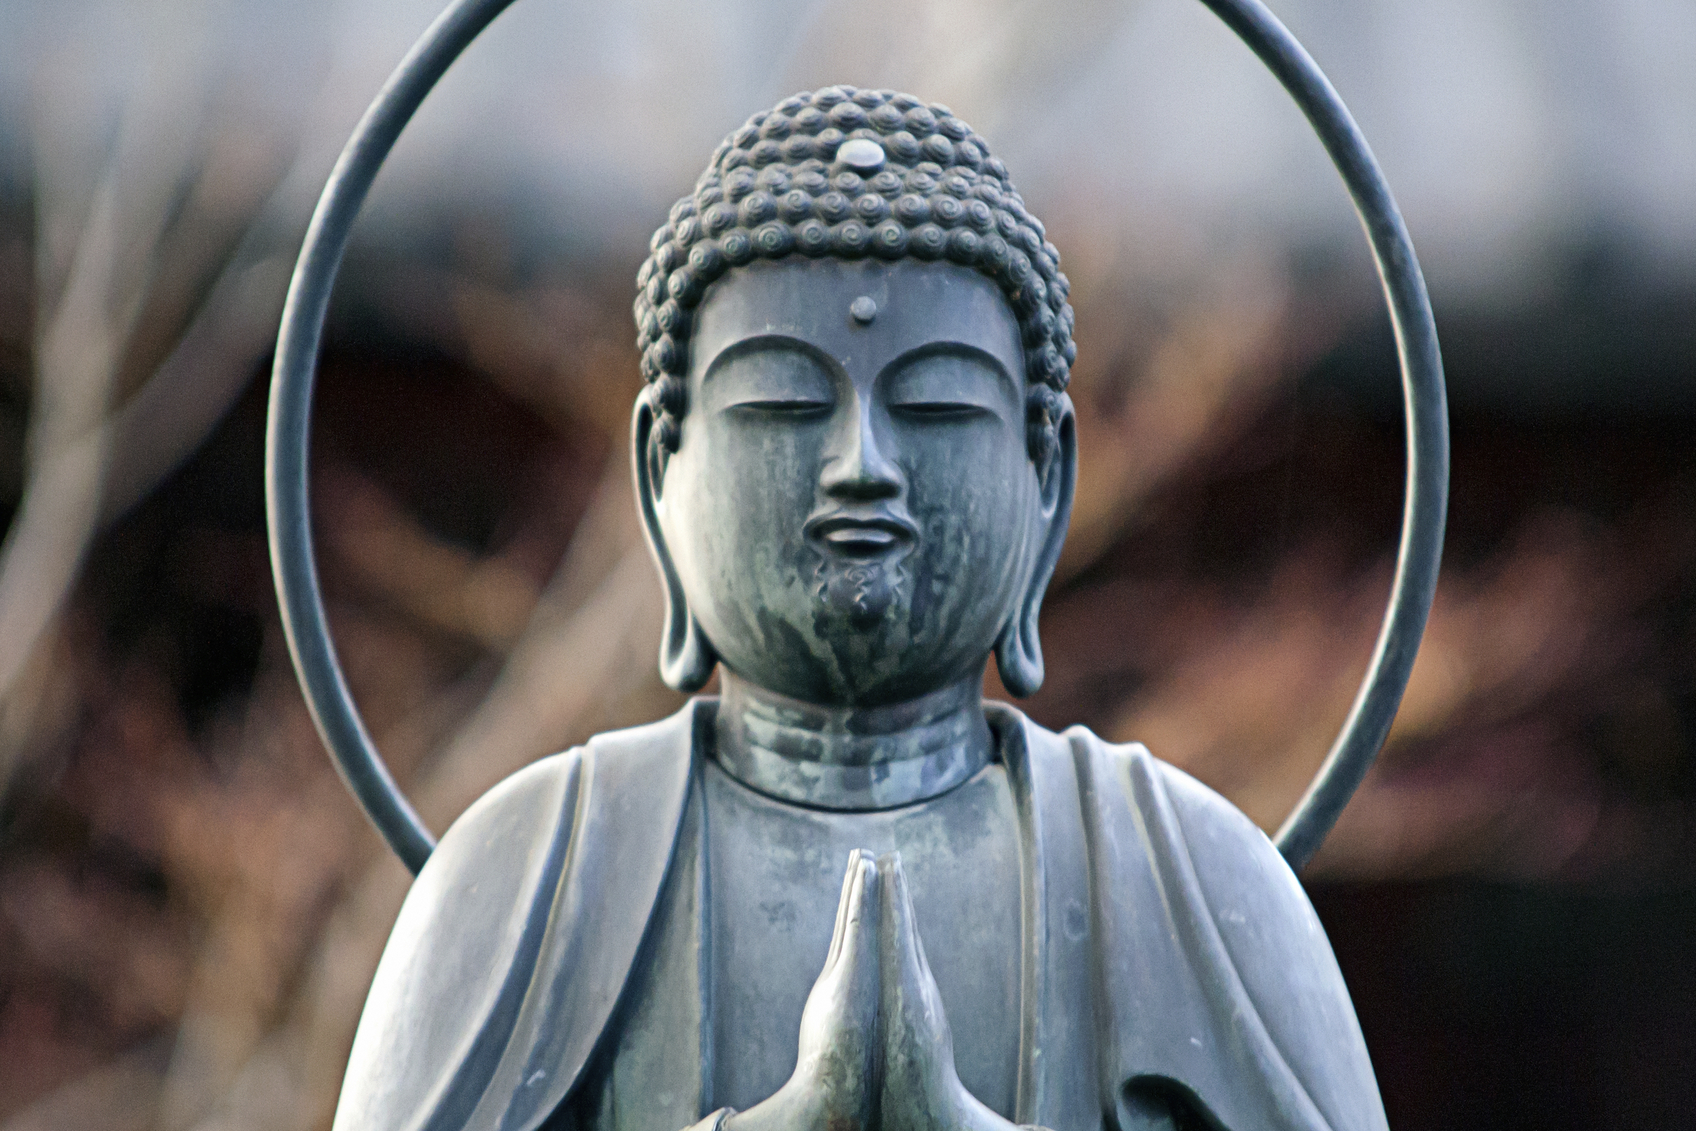 Buddhizmus